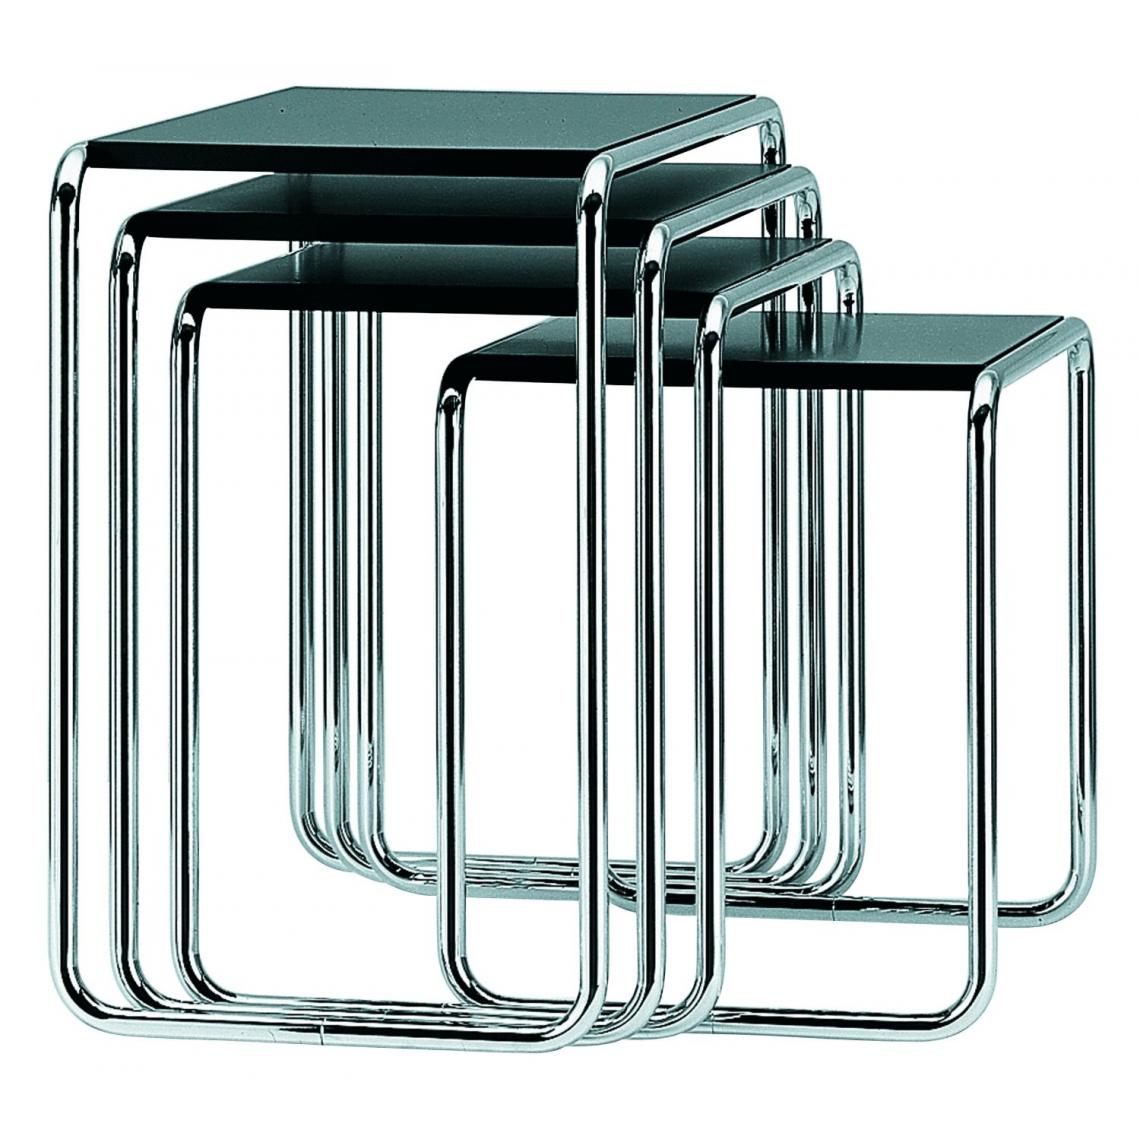 Thonet - Table d'appoint B 9 - Décapé noyer - c (59 x 55 x 39 cm) - Tables d'appoint